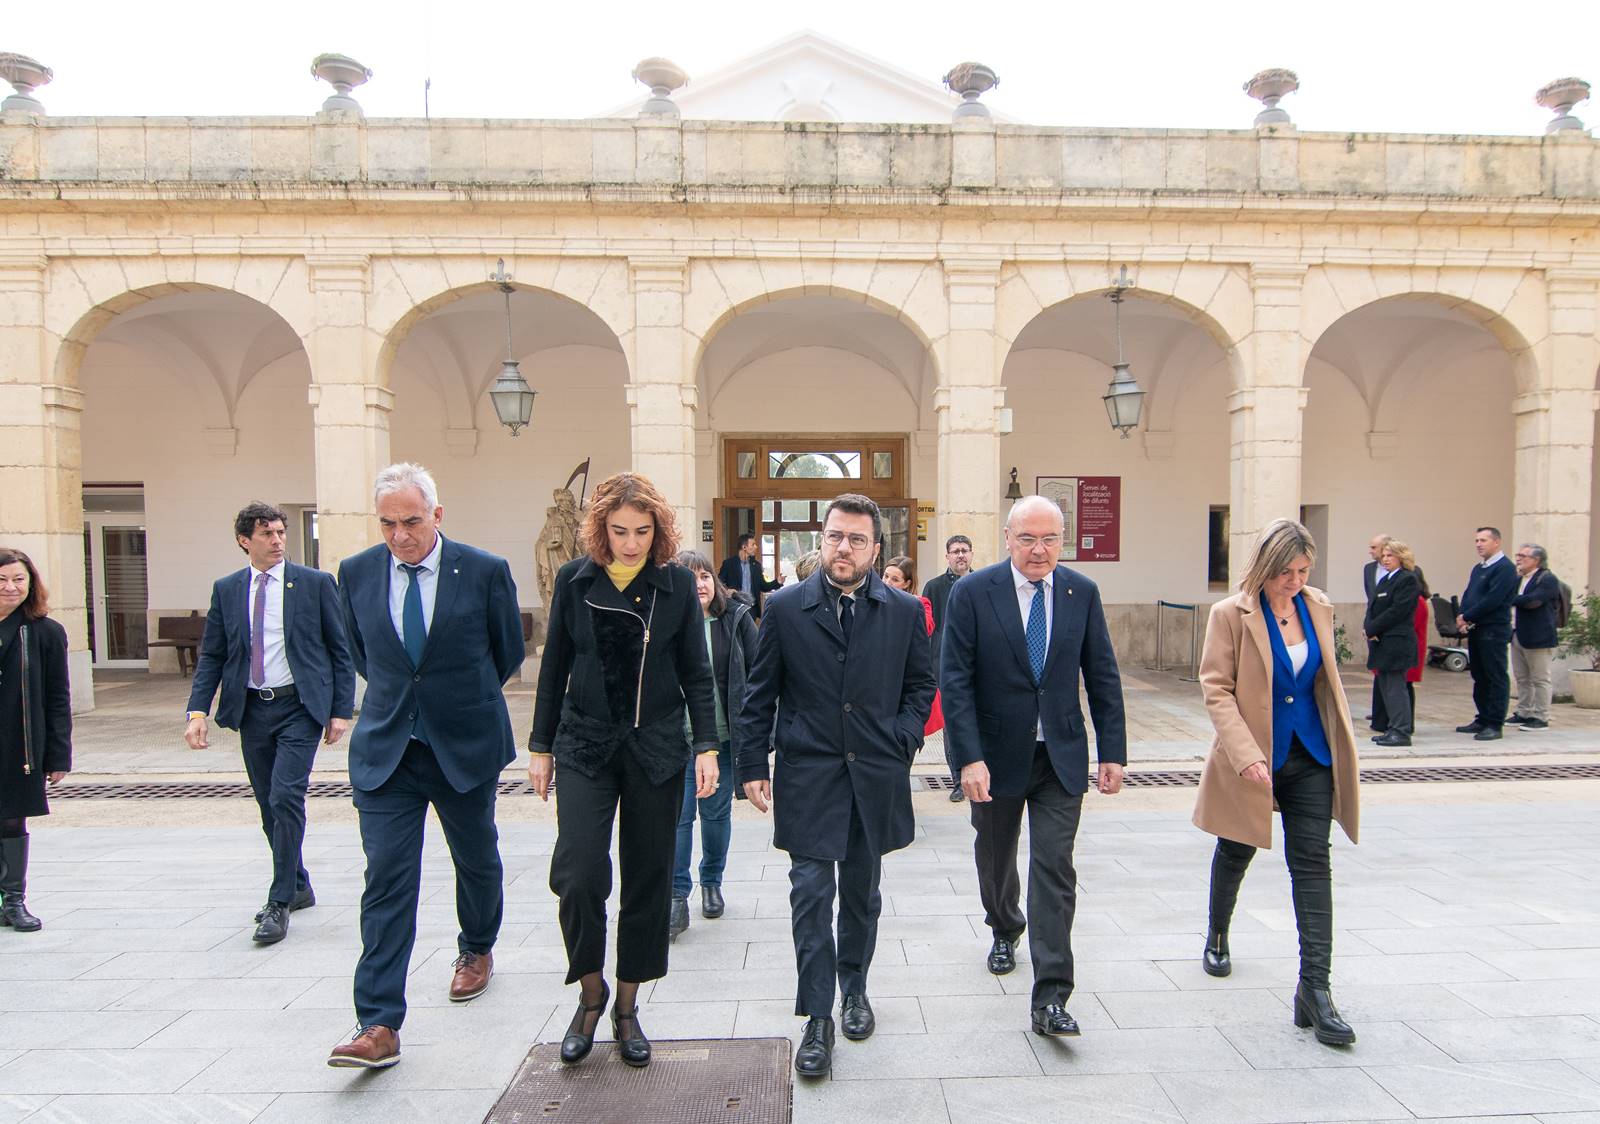 el president Aragonès, juntament amb la consellera de Justícia, Drets i Memòria, Gemma Ubasart i l'alcalde de Reus, Carles Pellicer, ha visitat les tasques d’exhumació del cos del militant antifranquista Cipriano Martos